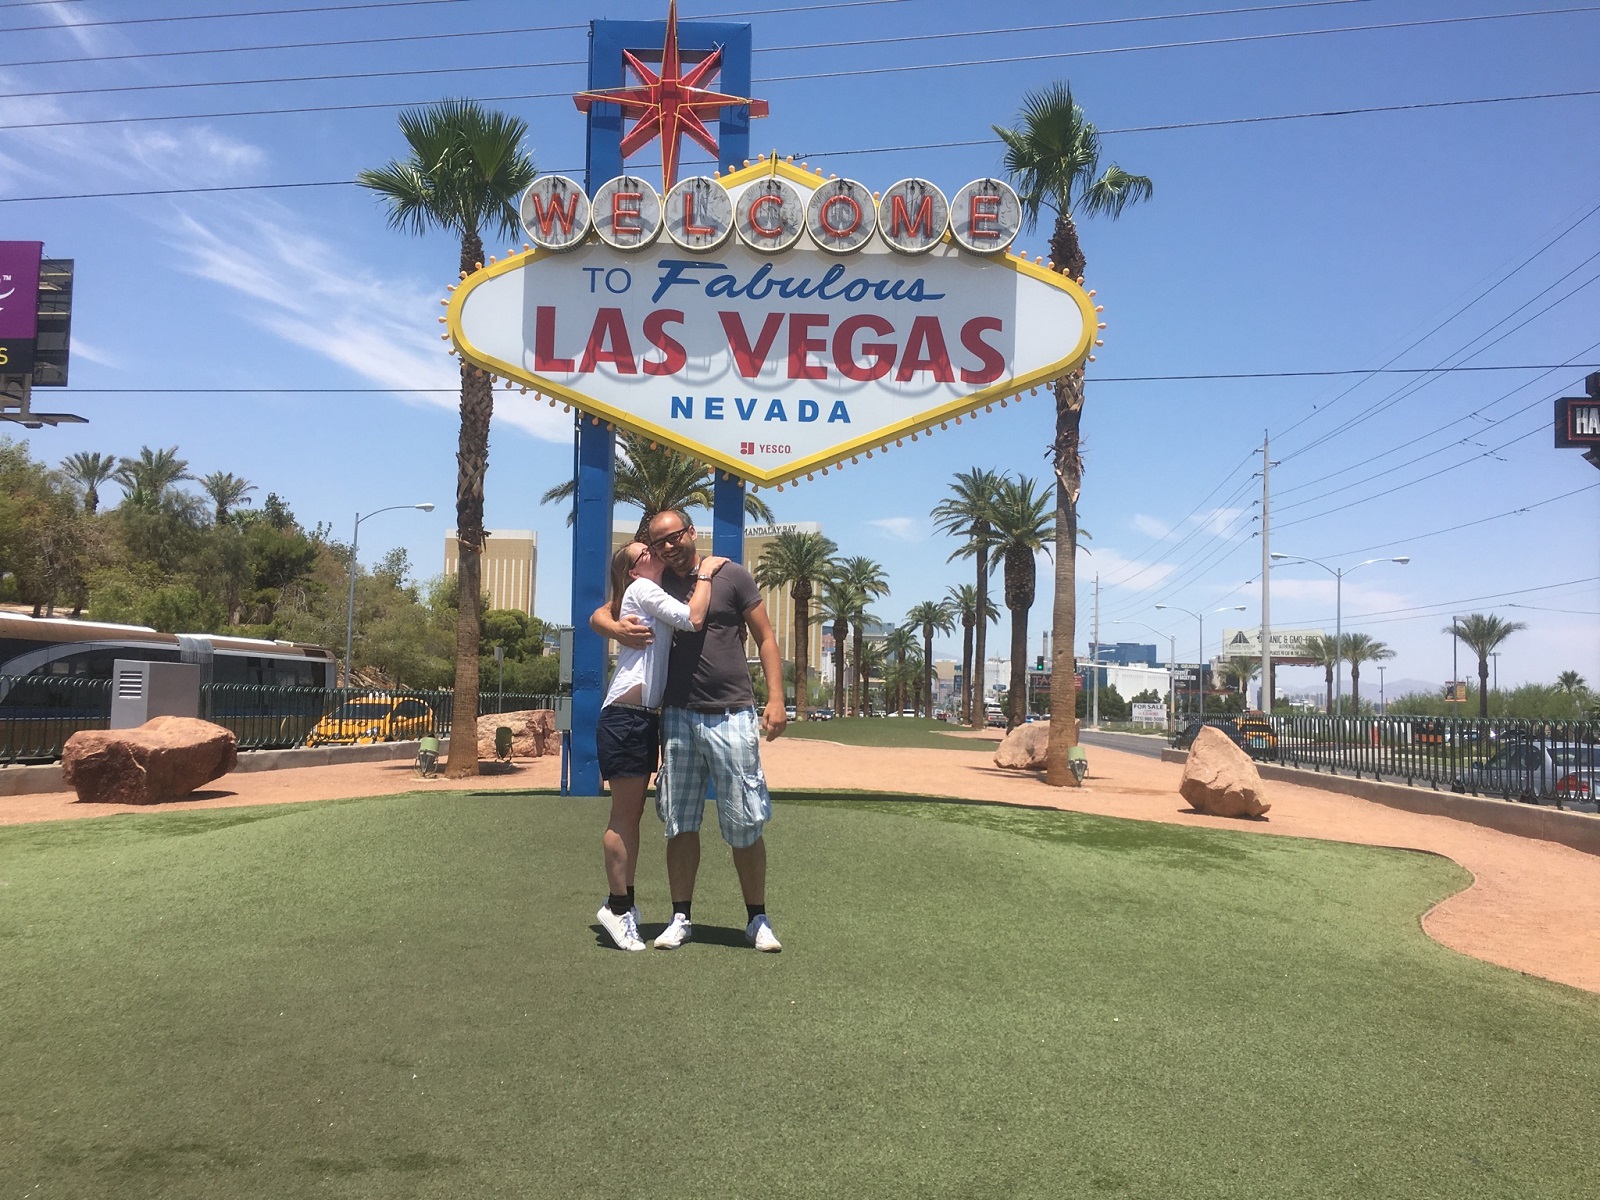 Las Vegas Schild - Die bekannteste Sehenswürdigkeit